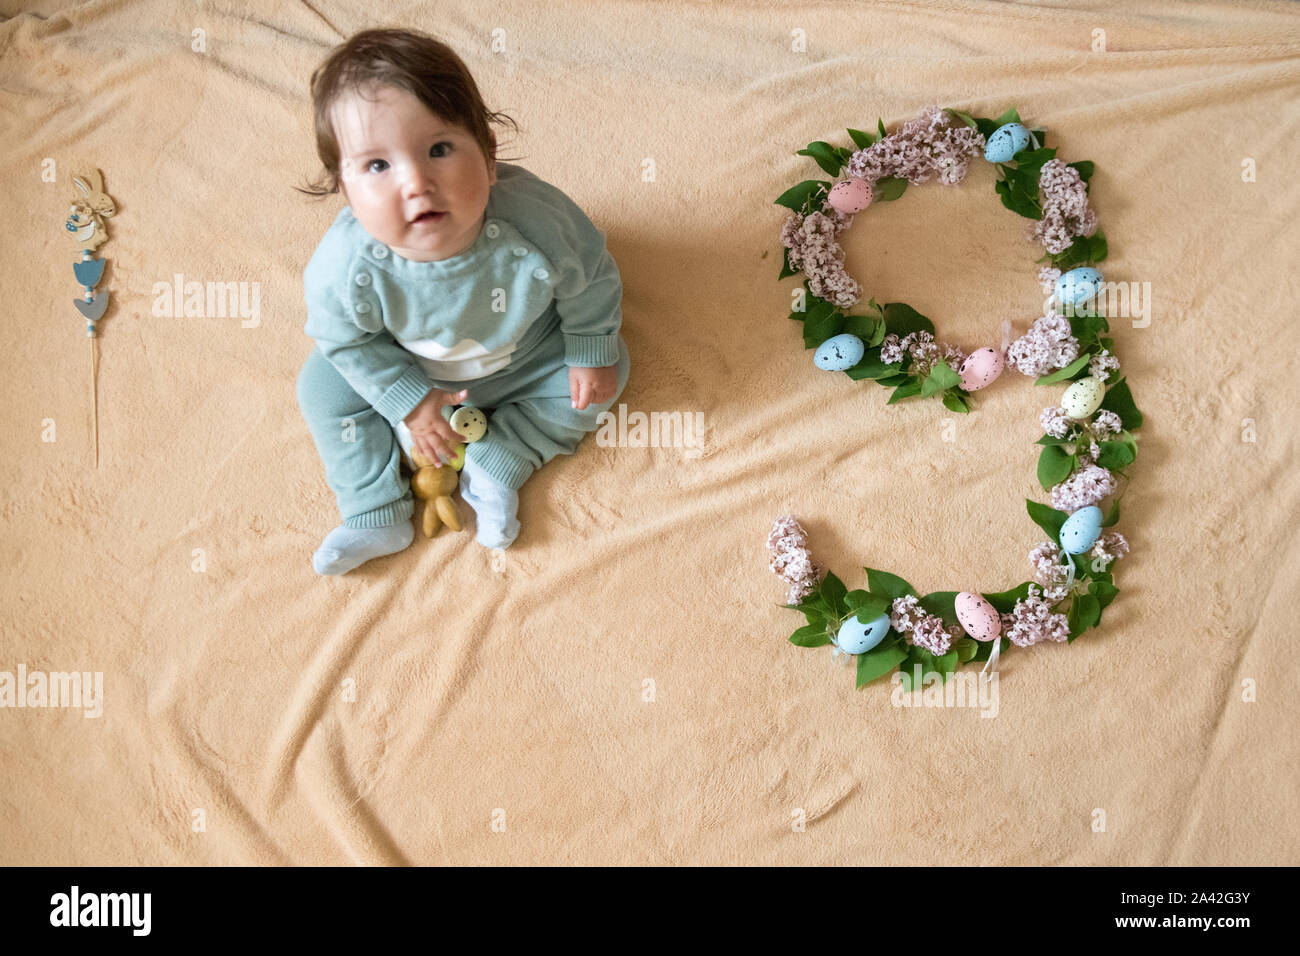 9 meses de edad fotografías e imágenes de alta resolución - Alamy